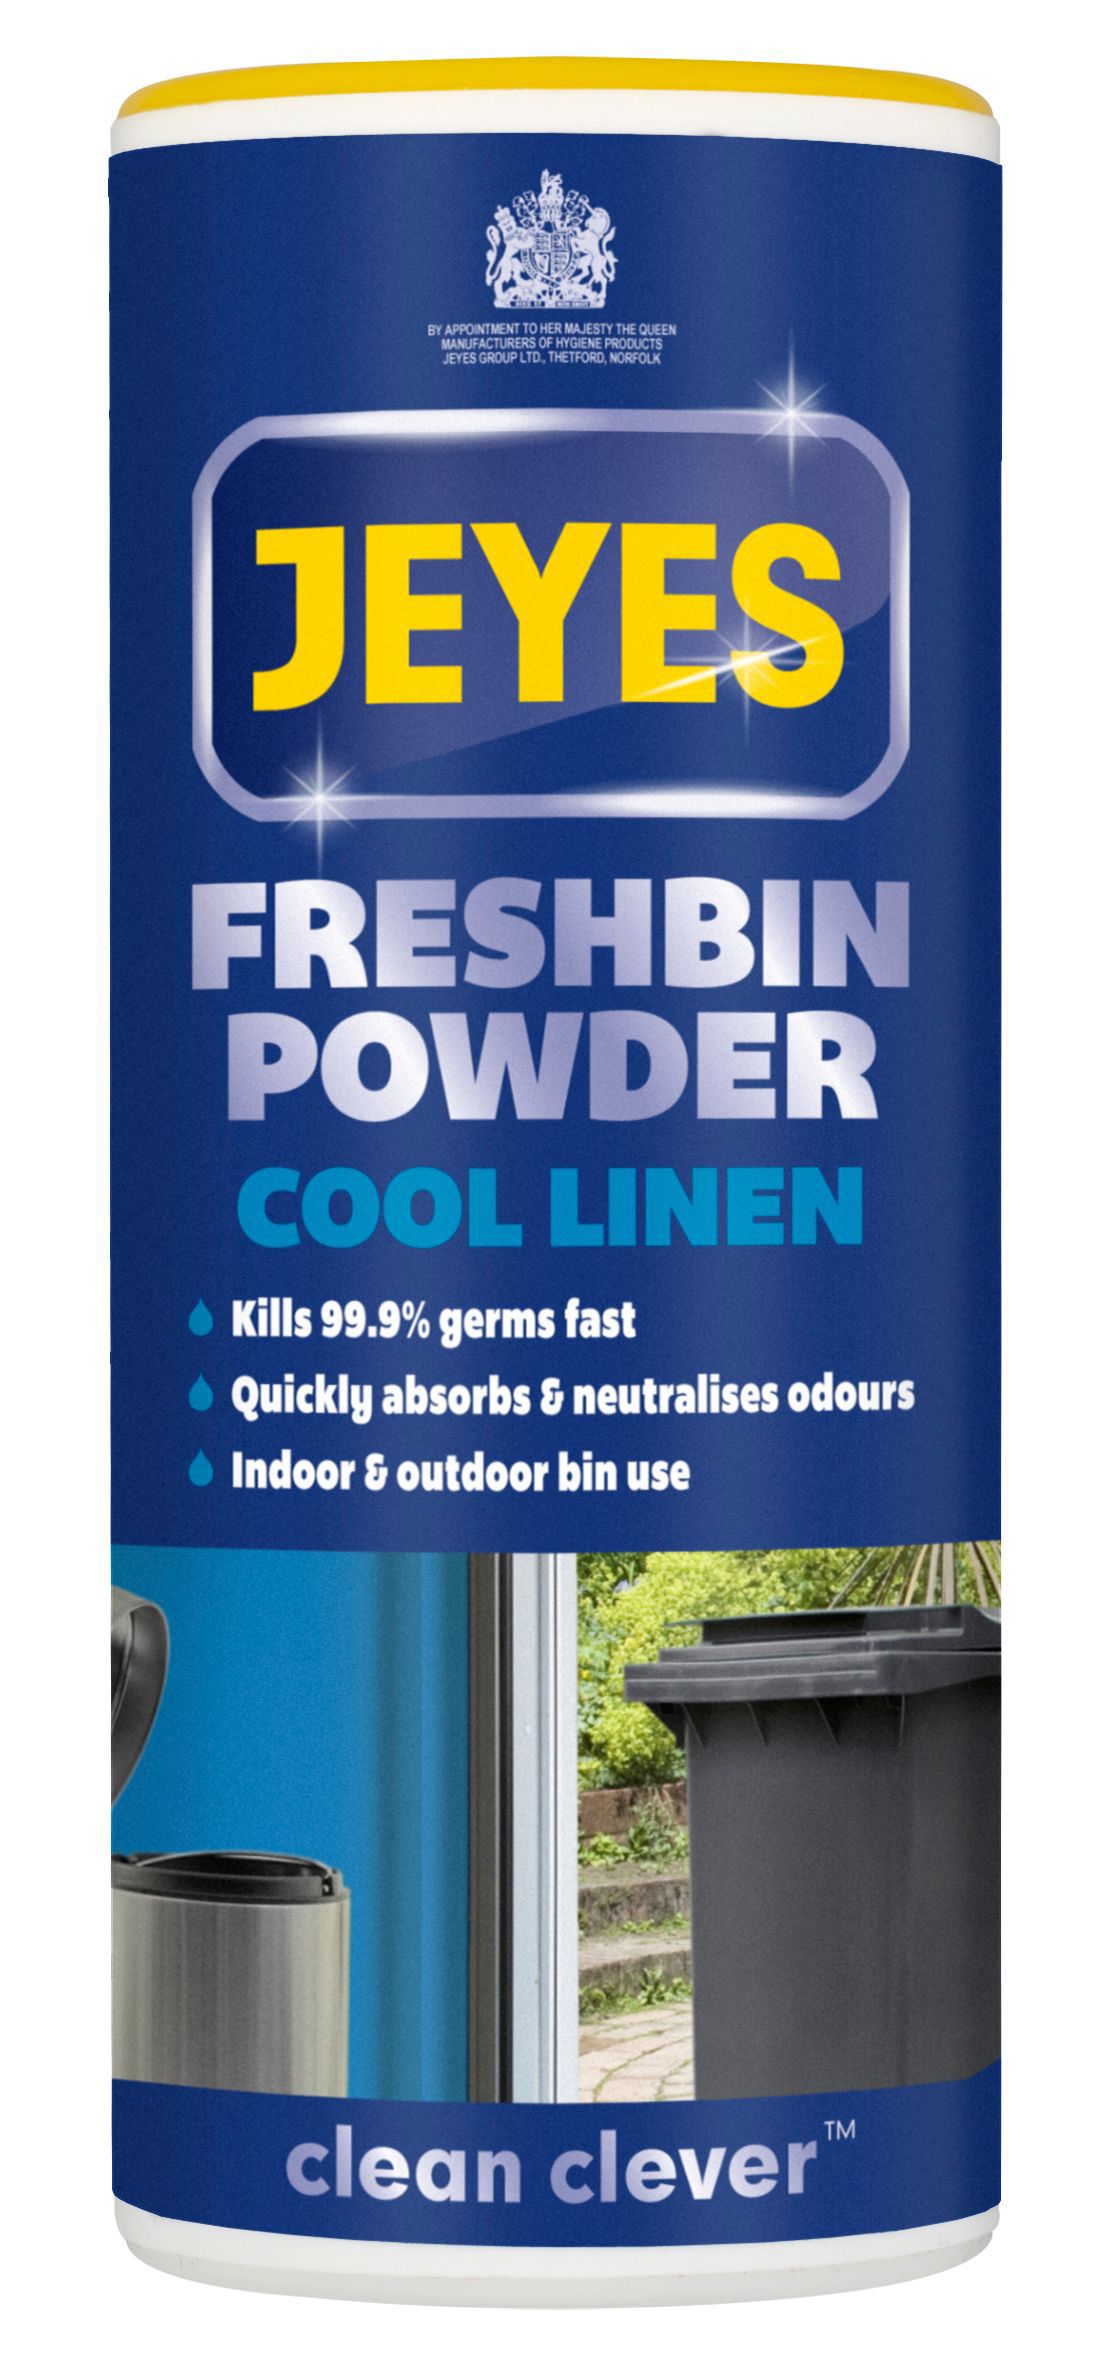 Jeyes Fluid Fresh bin powder, 550g